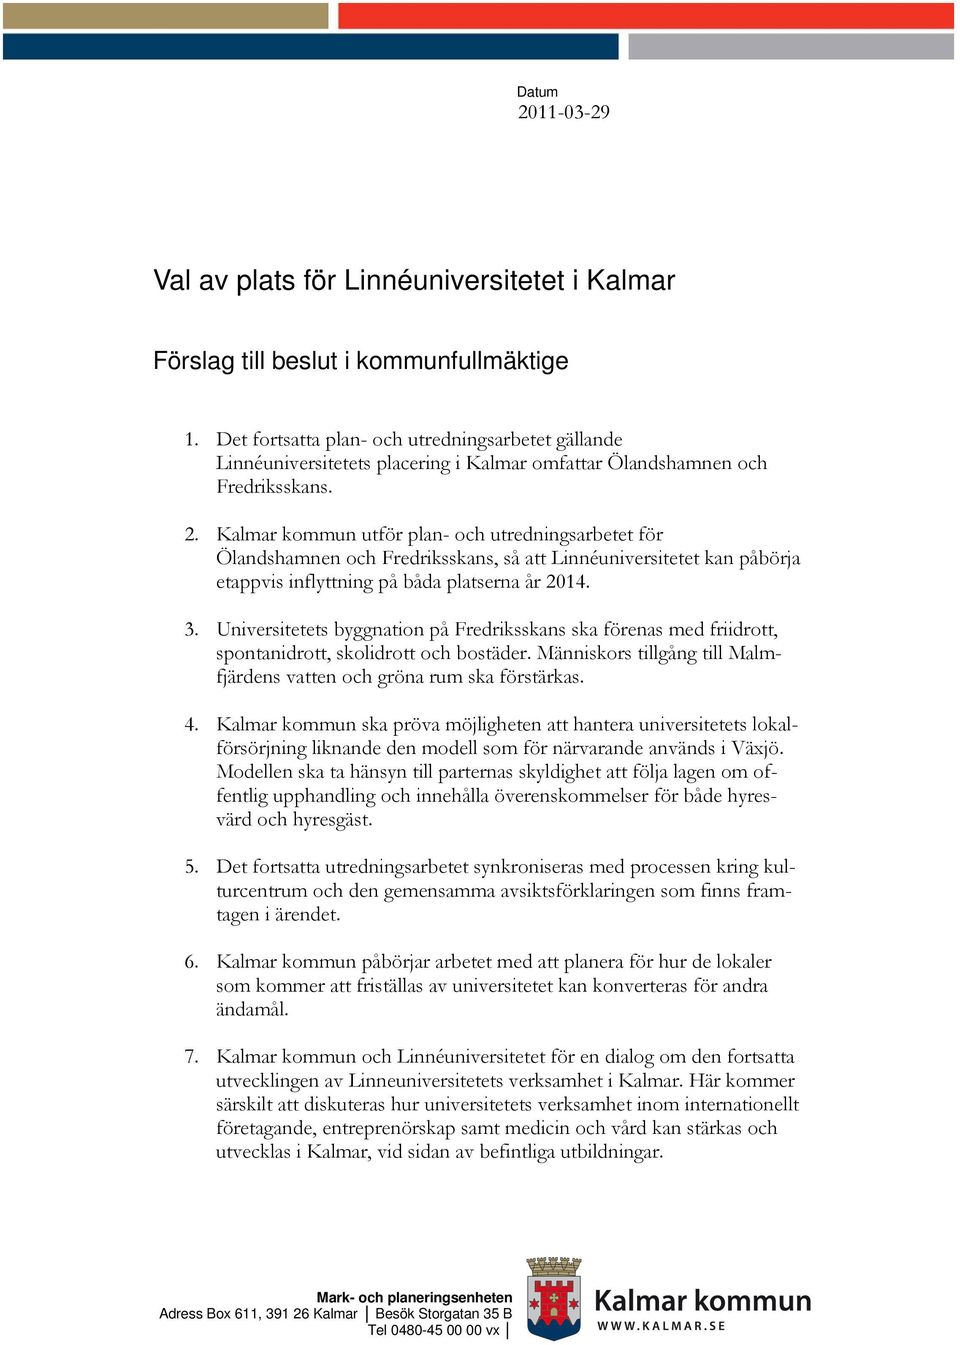 Kalmar kommun utför plan- och utredningsarbetet för Ölandshamnen och Fredriksskans, så att Linnéuniversitetet kan påbörja etappvis inflyttning på båda platserna år 2014. 3.